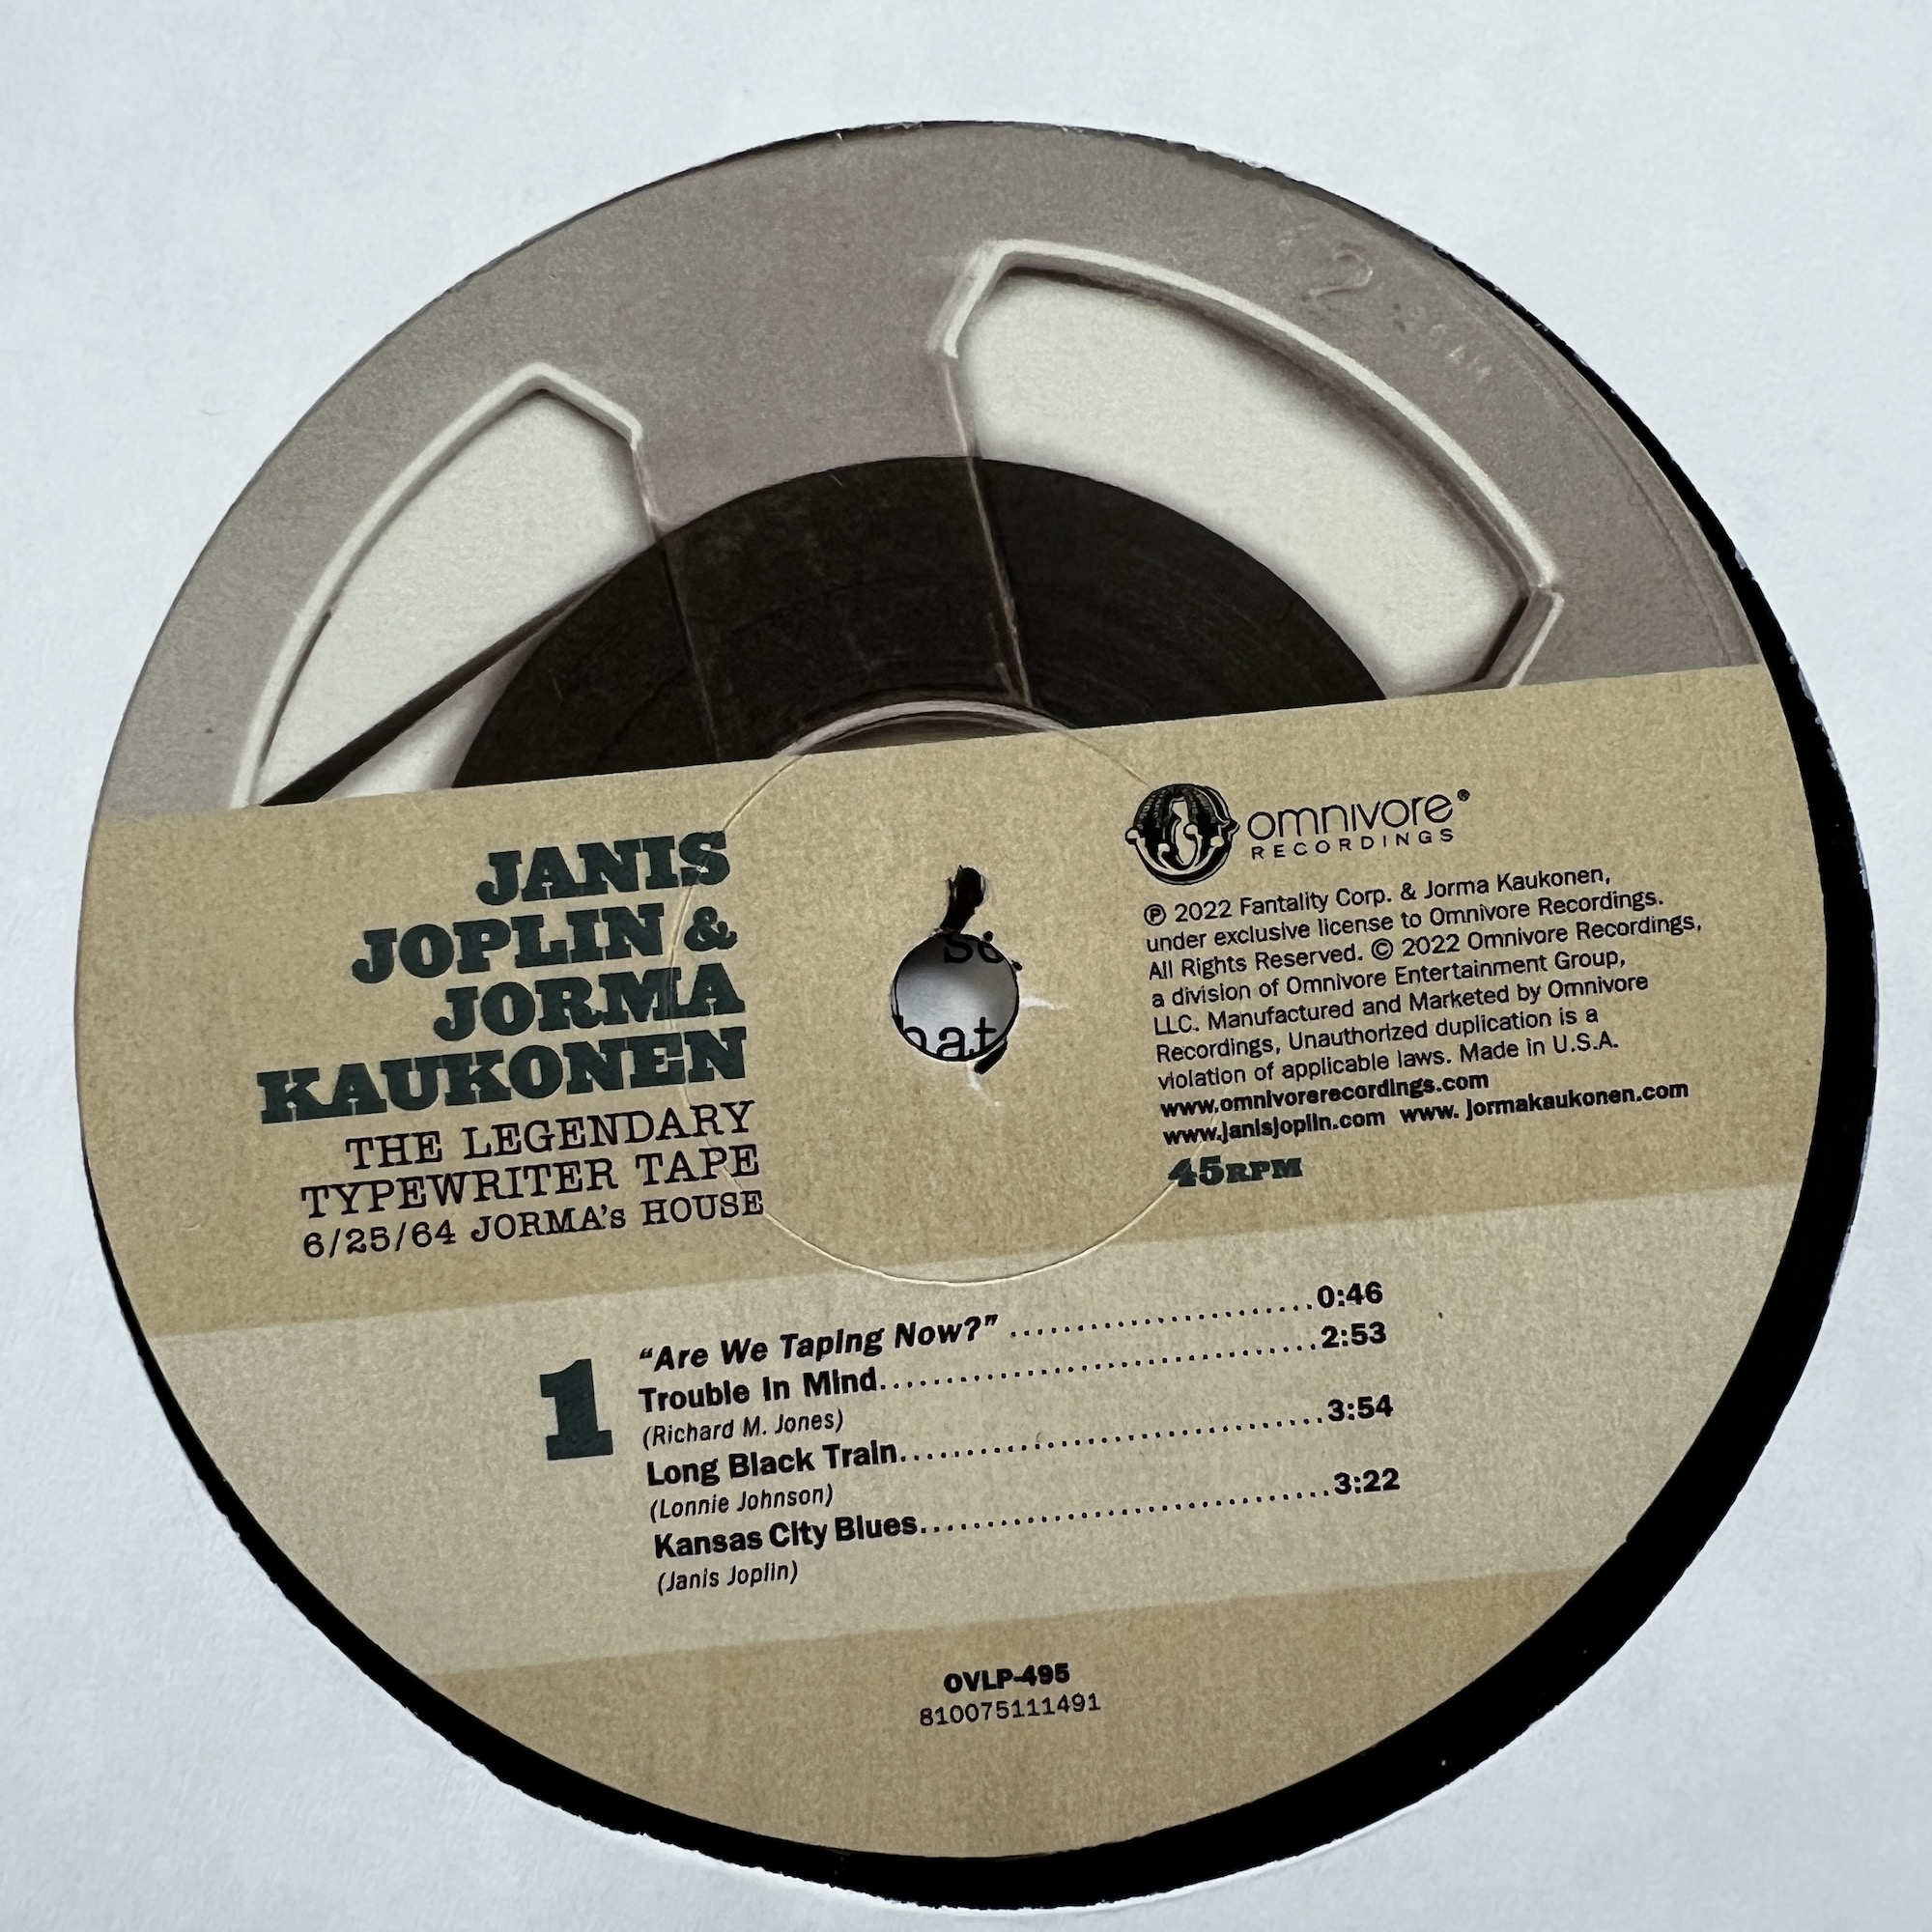 Janis Joplin & Jorma Kaukonen – The Legendary Typewriter Tape 